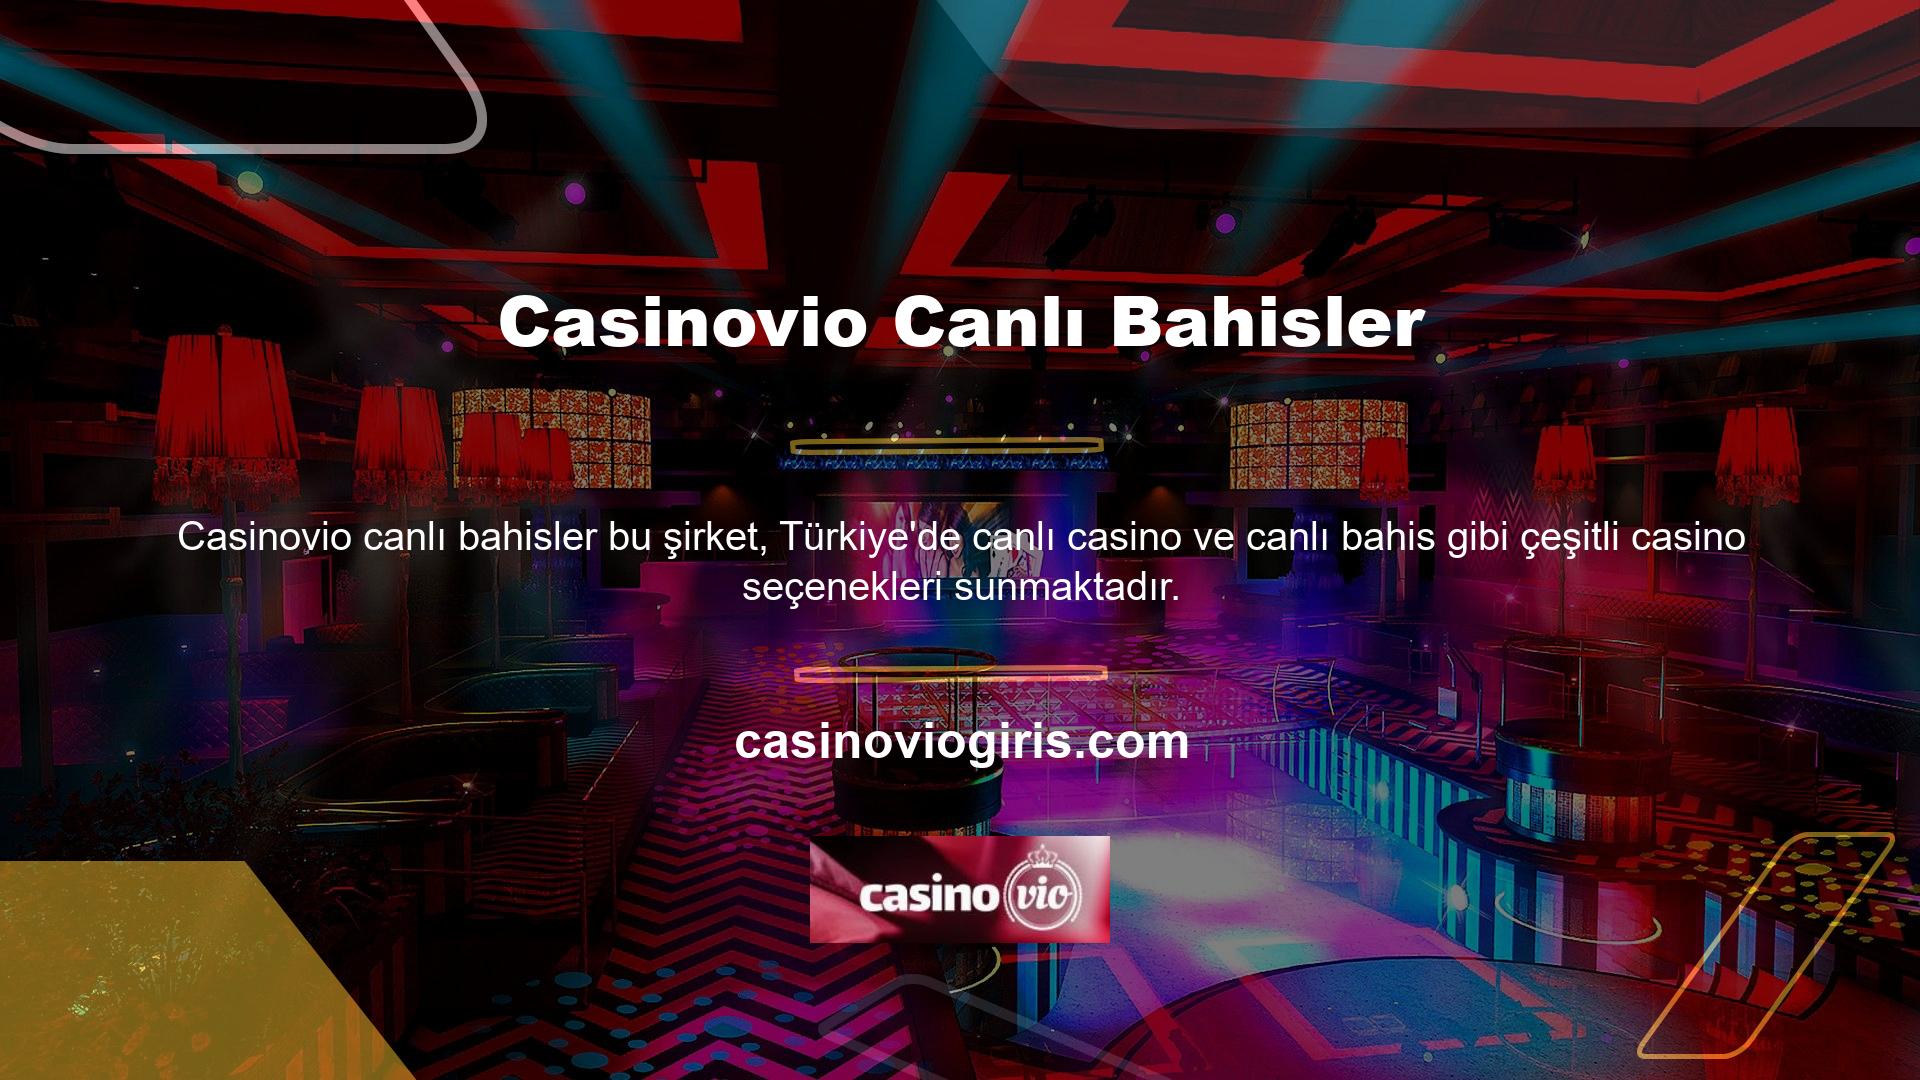 Casinovio web sitesi, tamamen profesyonel bir hizmet sunan en ünlü bahis sitelerinden biri haline geldi